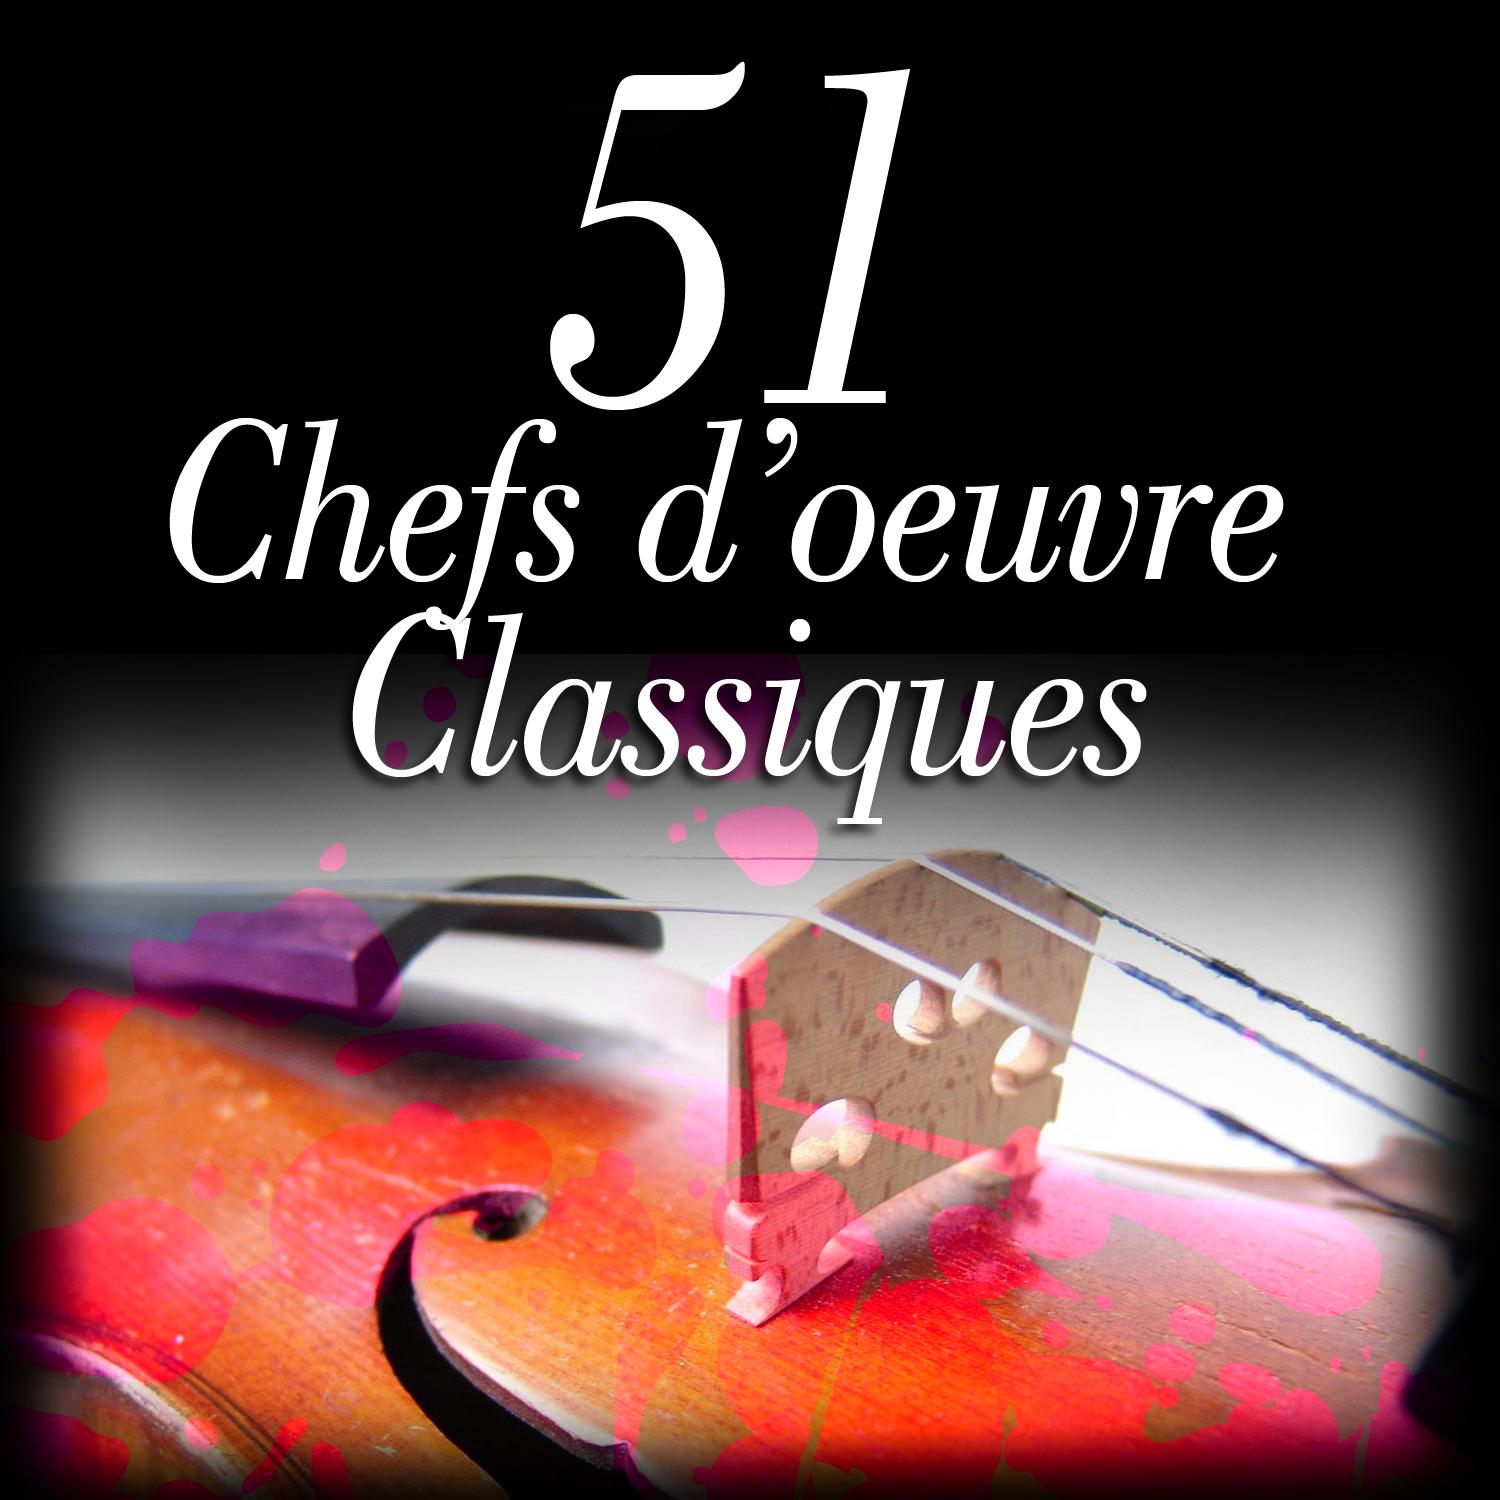 51 Chefs d'oeuvre Classiques